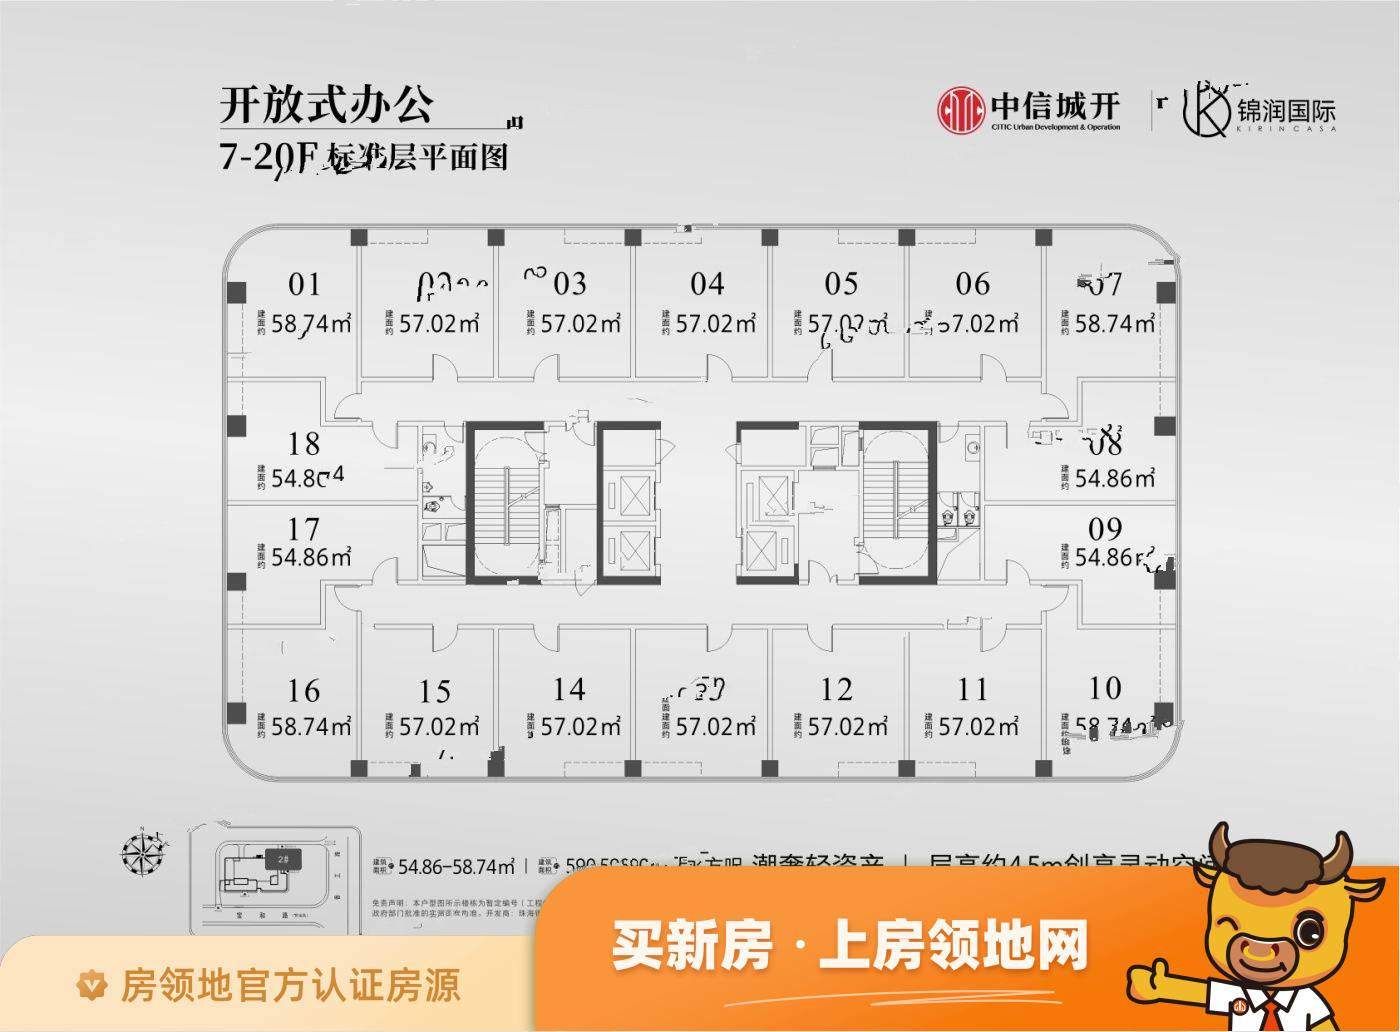 锦润国际大厦规划图1